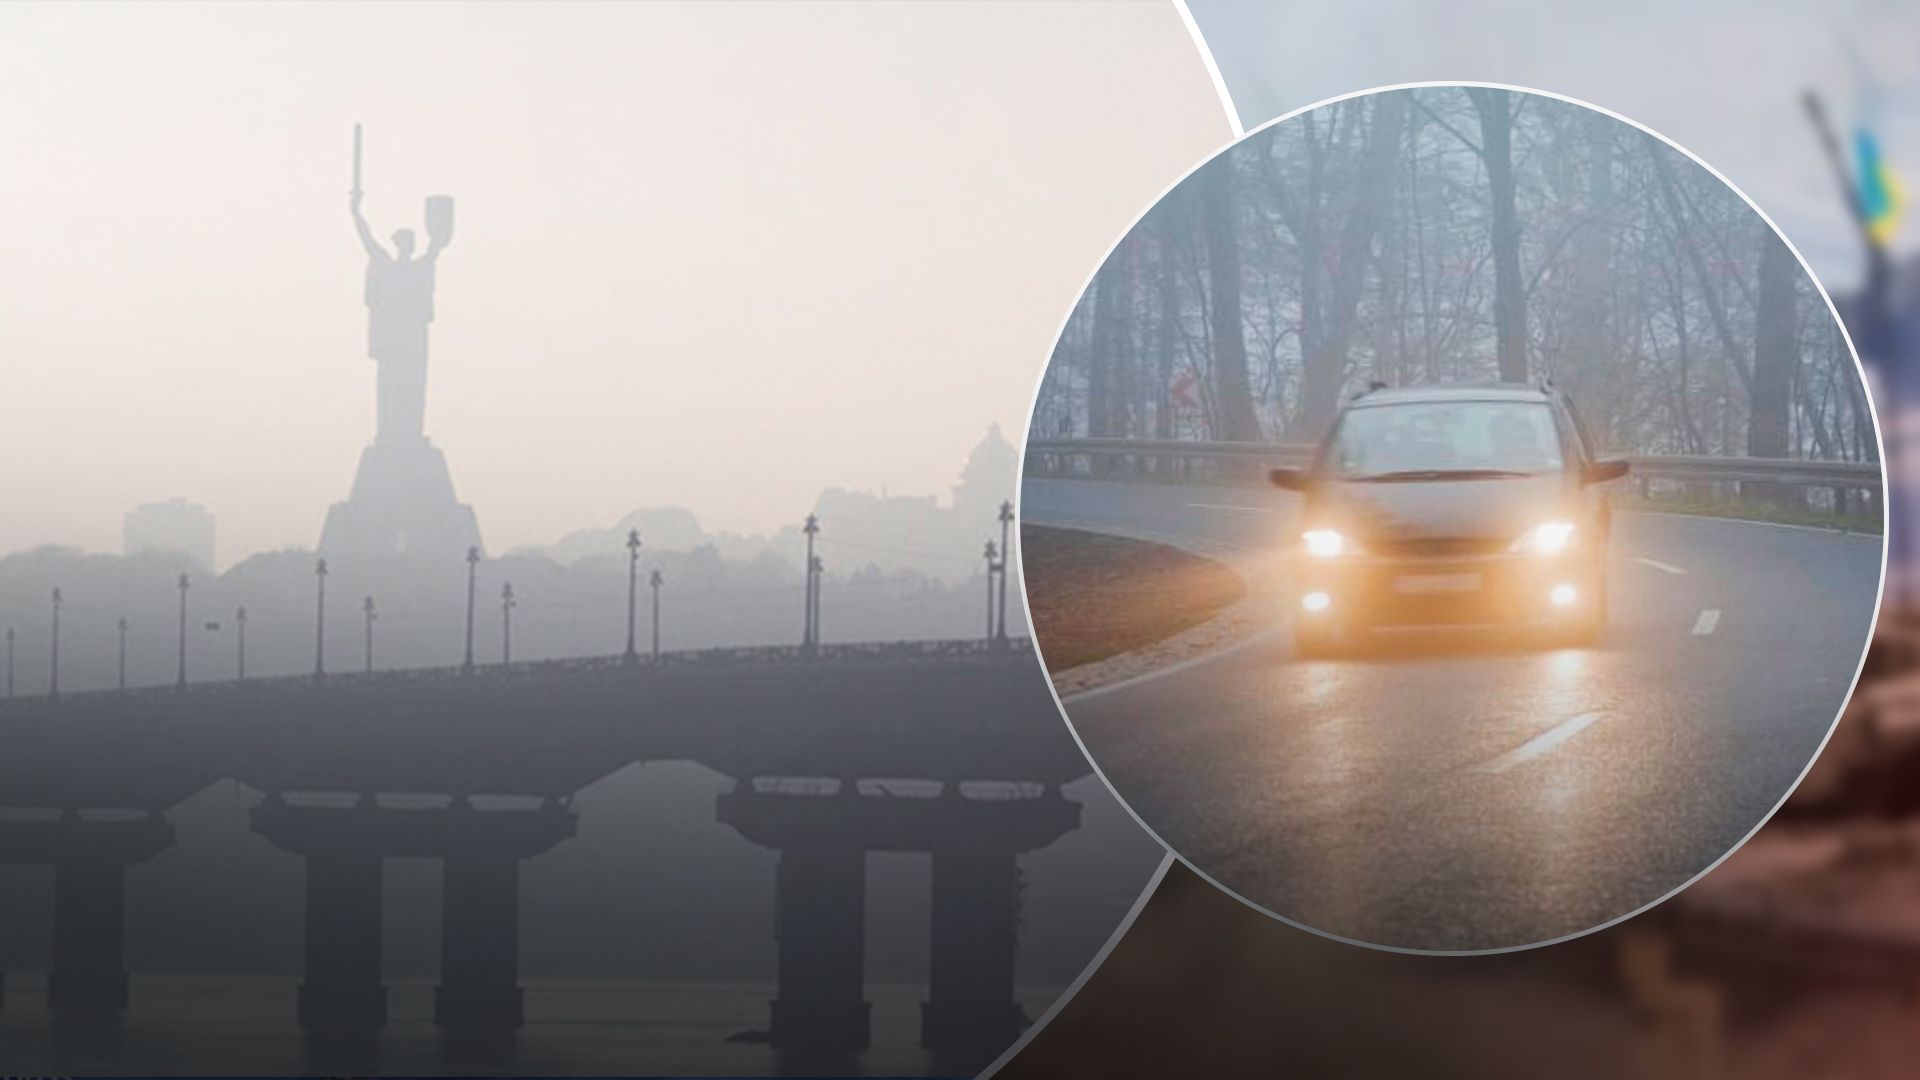  Киев окутал густой туман